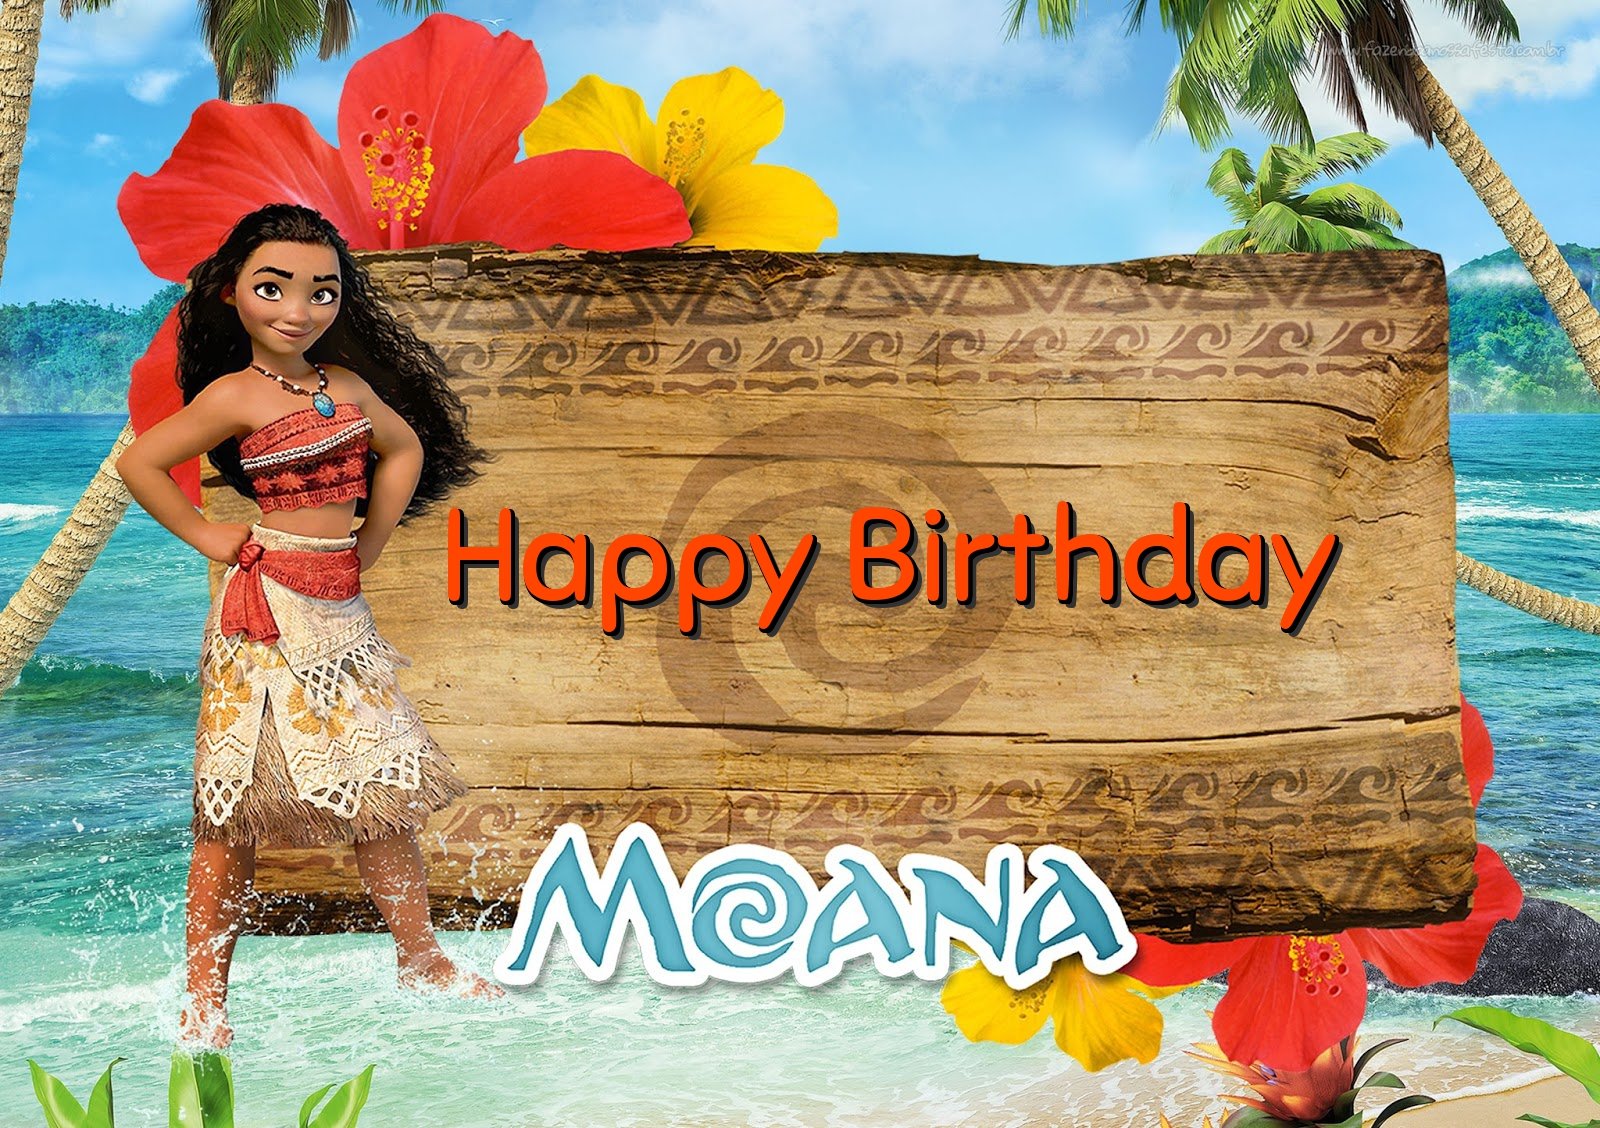 moana-birthday-ecards